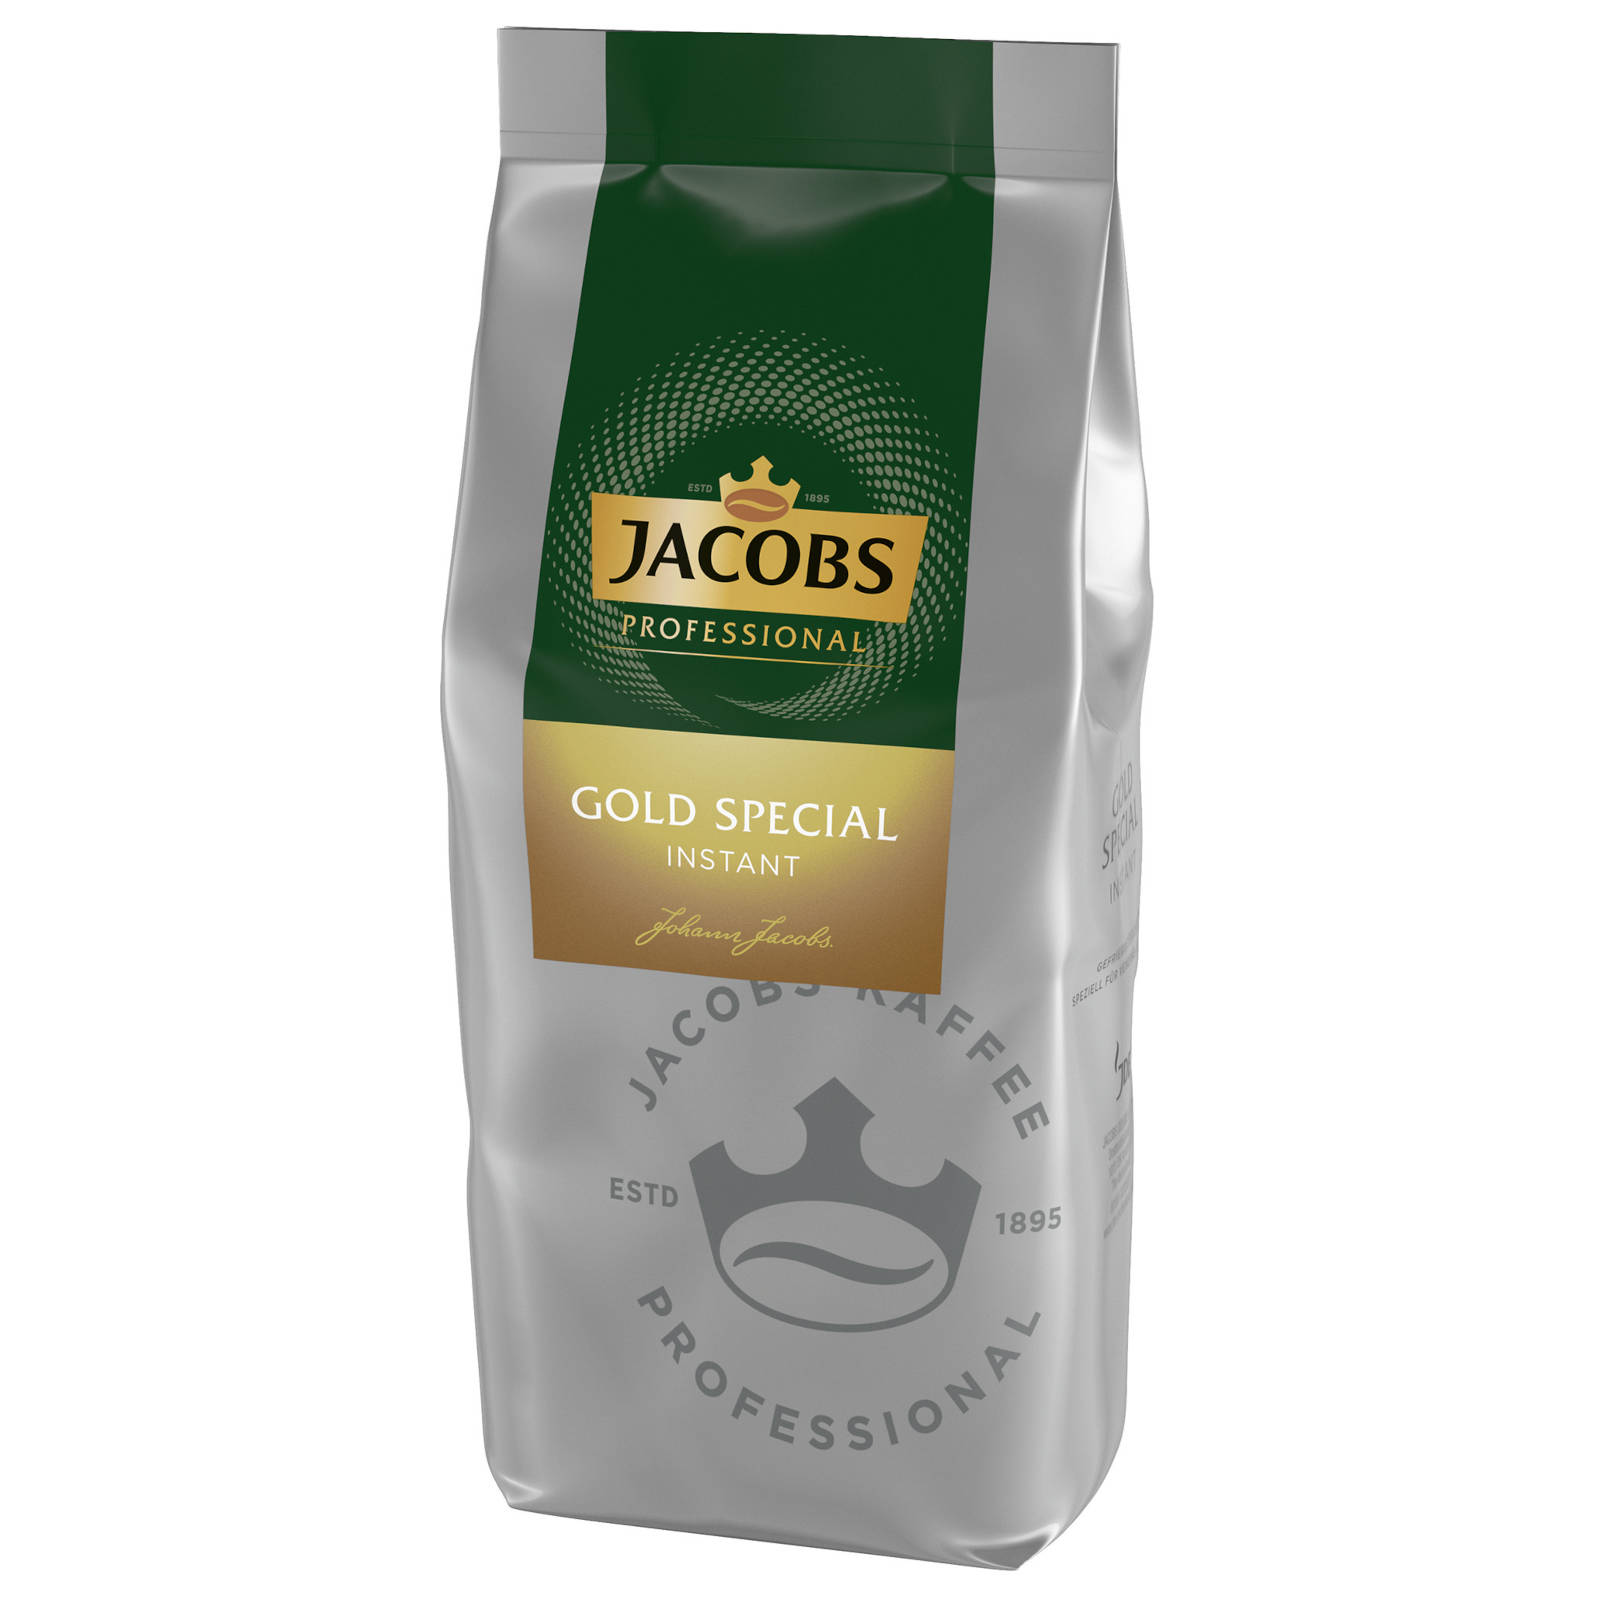 JACOBS Professional Gold Special 8x500 g Wasser heißem (In auflösen) Instantkaffee